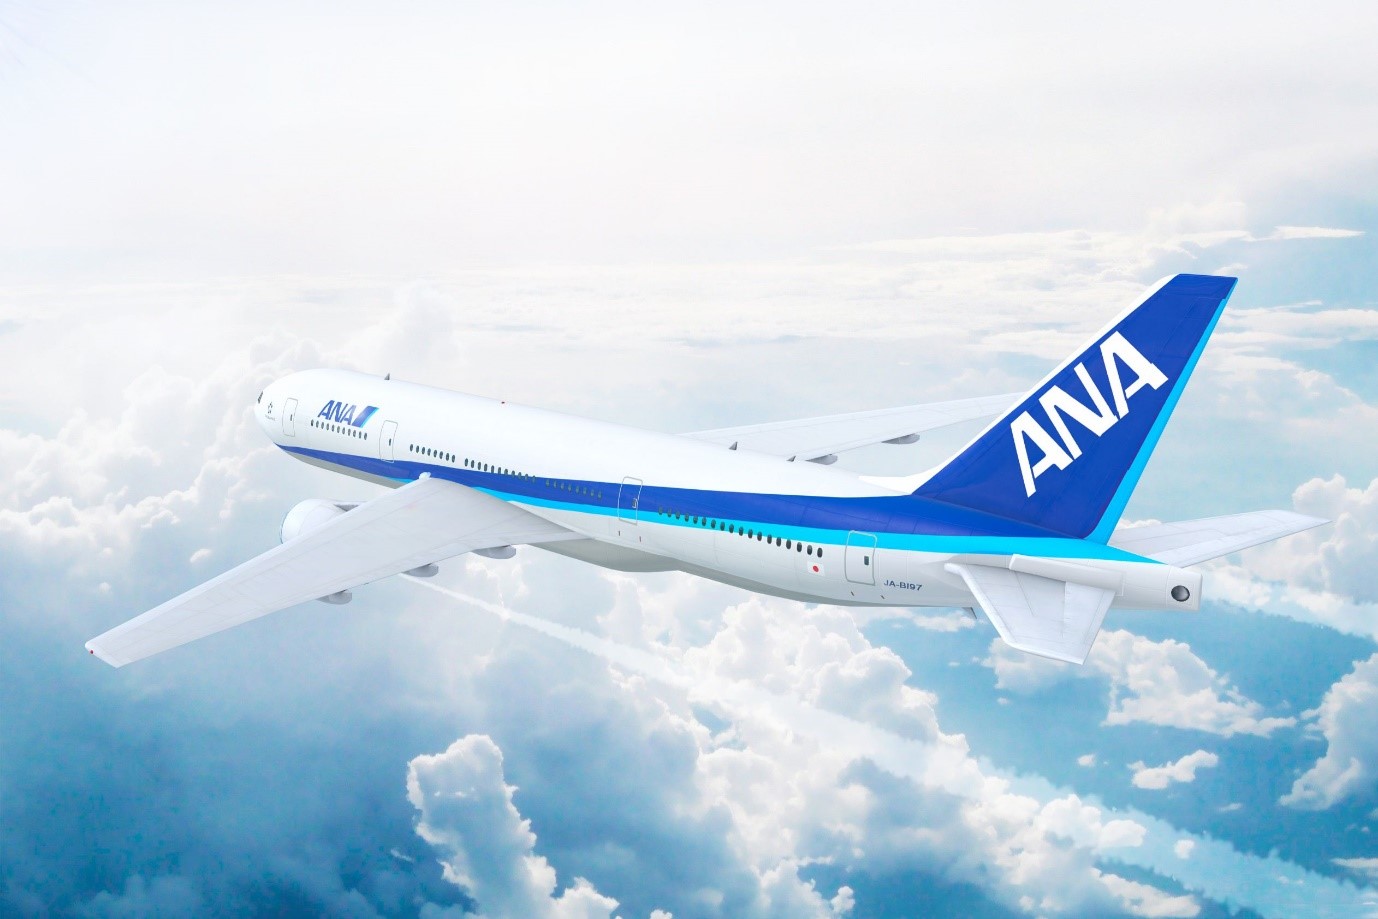 Đặt vé All Nippon Airways tại iVIVU.com ngay để tận hưởng các ưu đãi độc quyền.